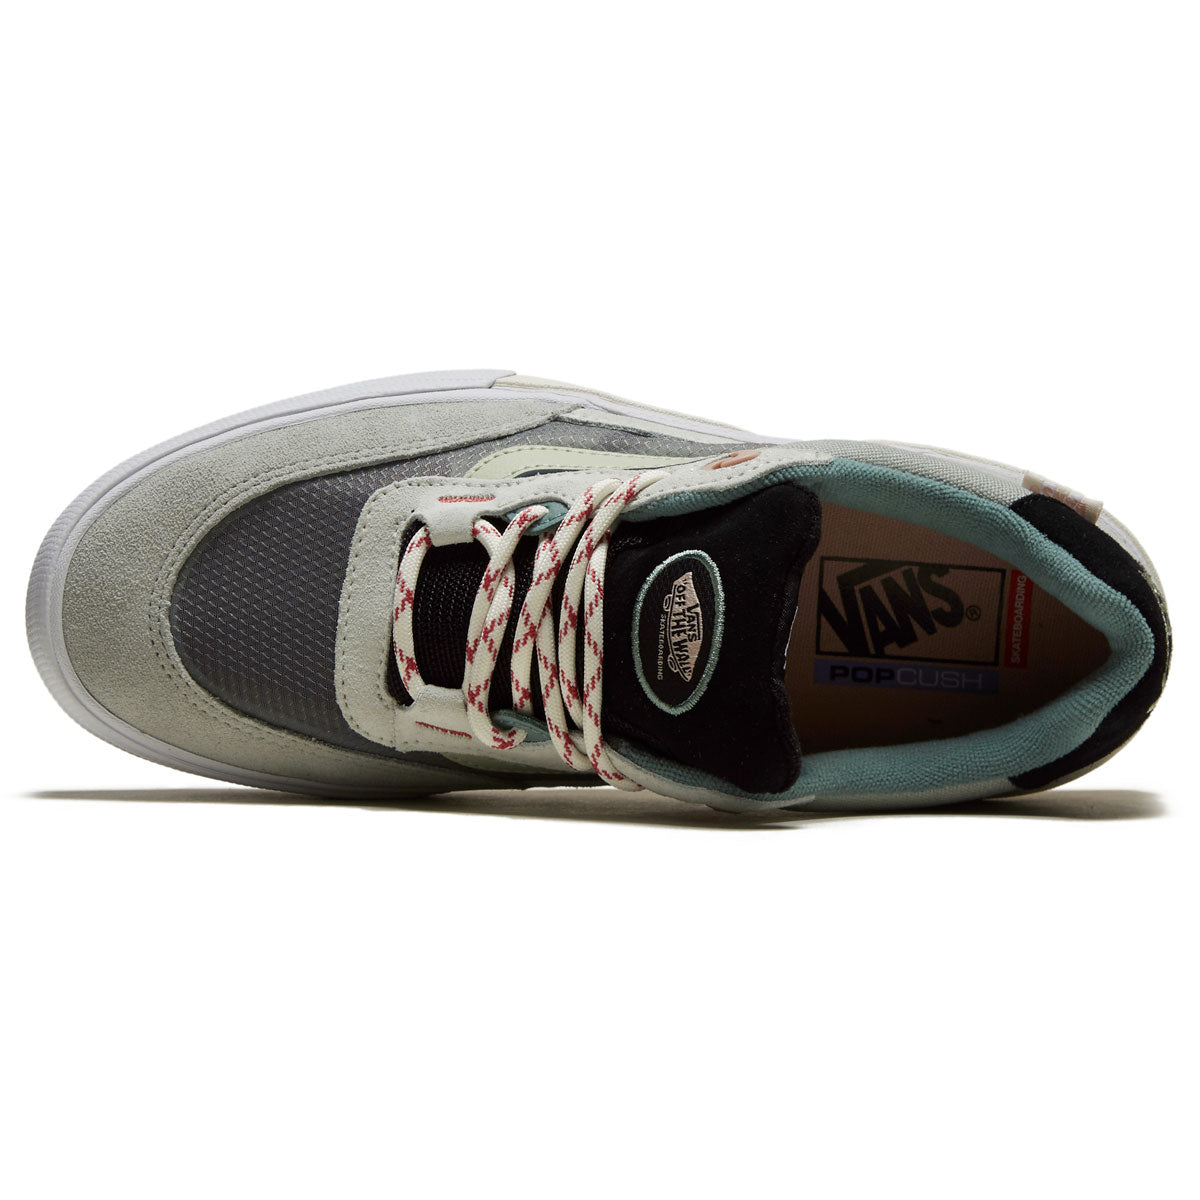 Vans Wayvee Shoes - Gray/Multi image 3